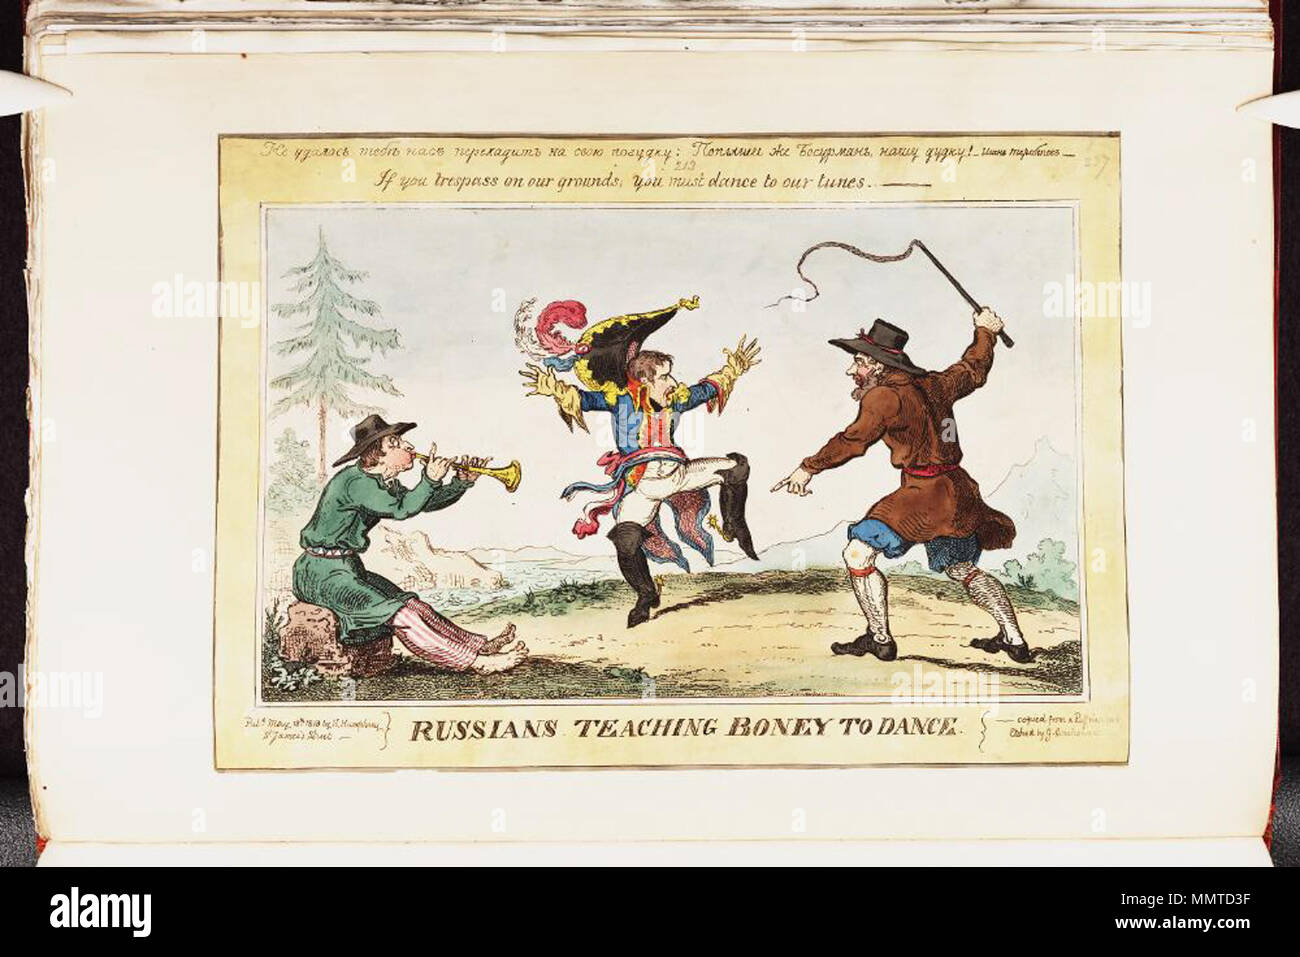 . La satire de la campagne de Russie de Napoléon. (La caricature politique) d'enseignement russes à la danse. Boney 18 mai 1813. Les bibliothèques Bodleian, enseignement de la danse à Boney russes Banque D'Images